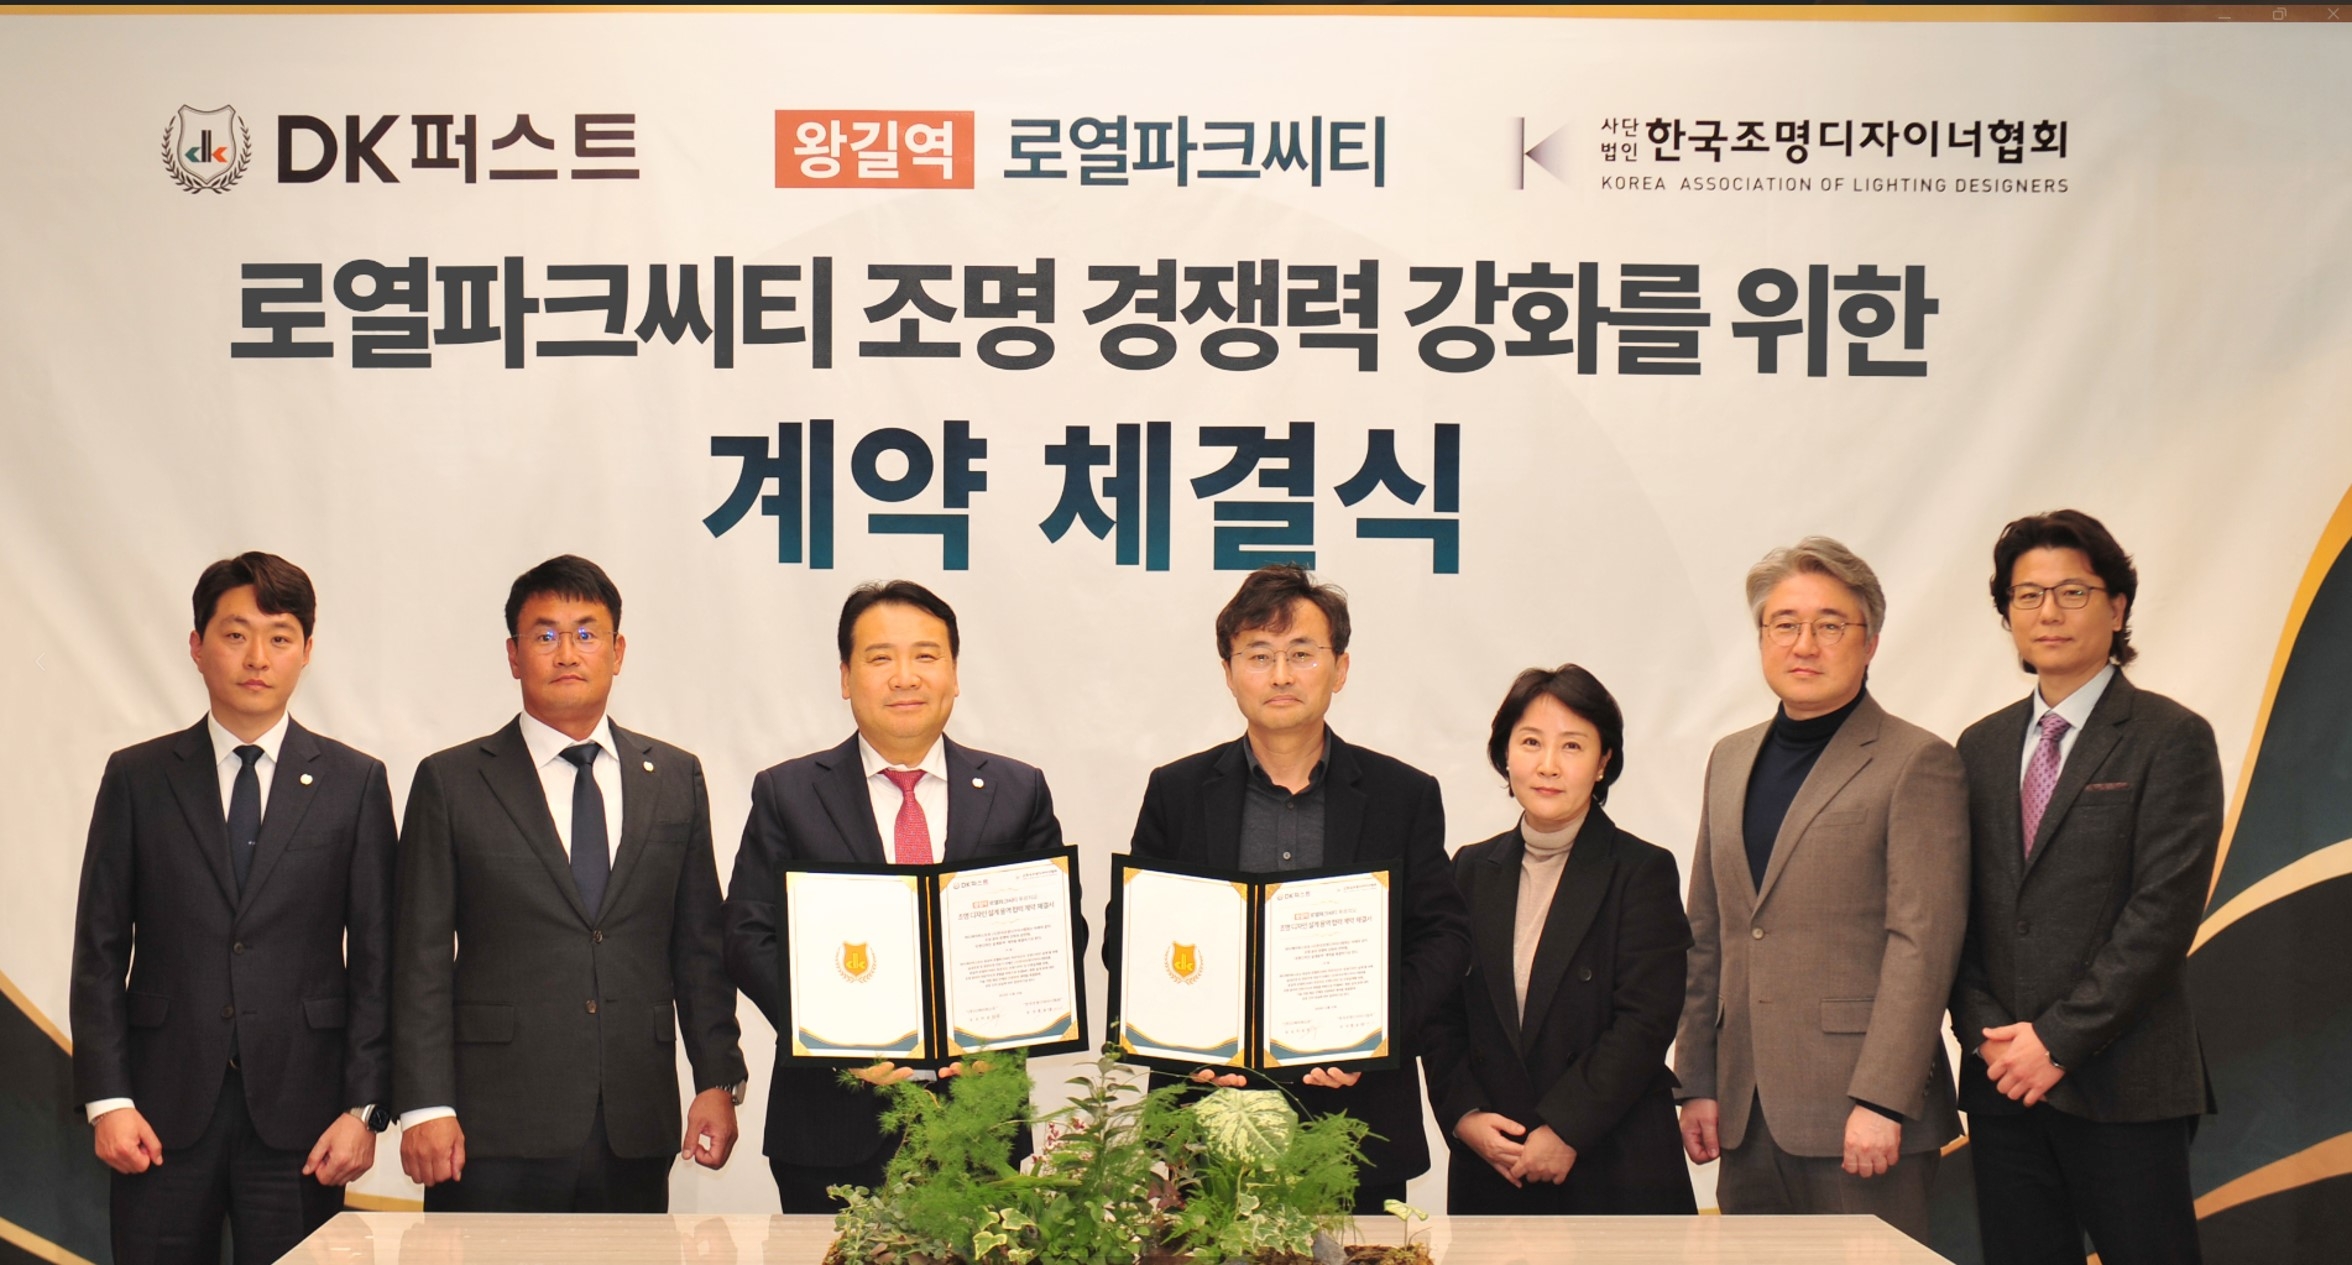 DK아시아가 한국조명디자이너협회와 로열파크씨티 조명경쟁력 강화를 위한 계약을 체결하고 기념사진을 촬영하고 있다./사진제공=DK 아시아